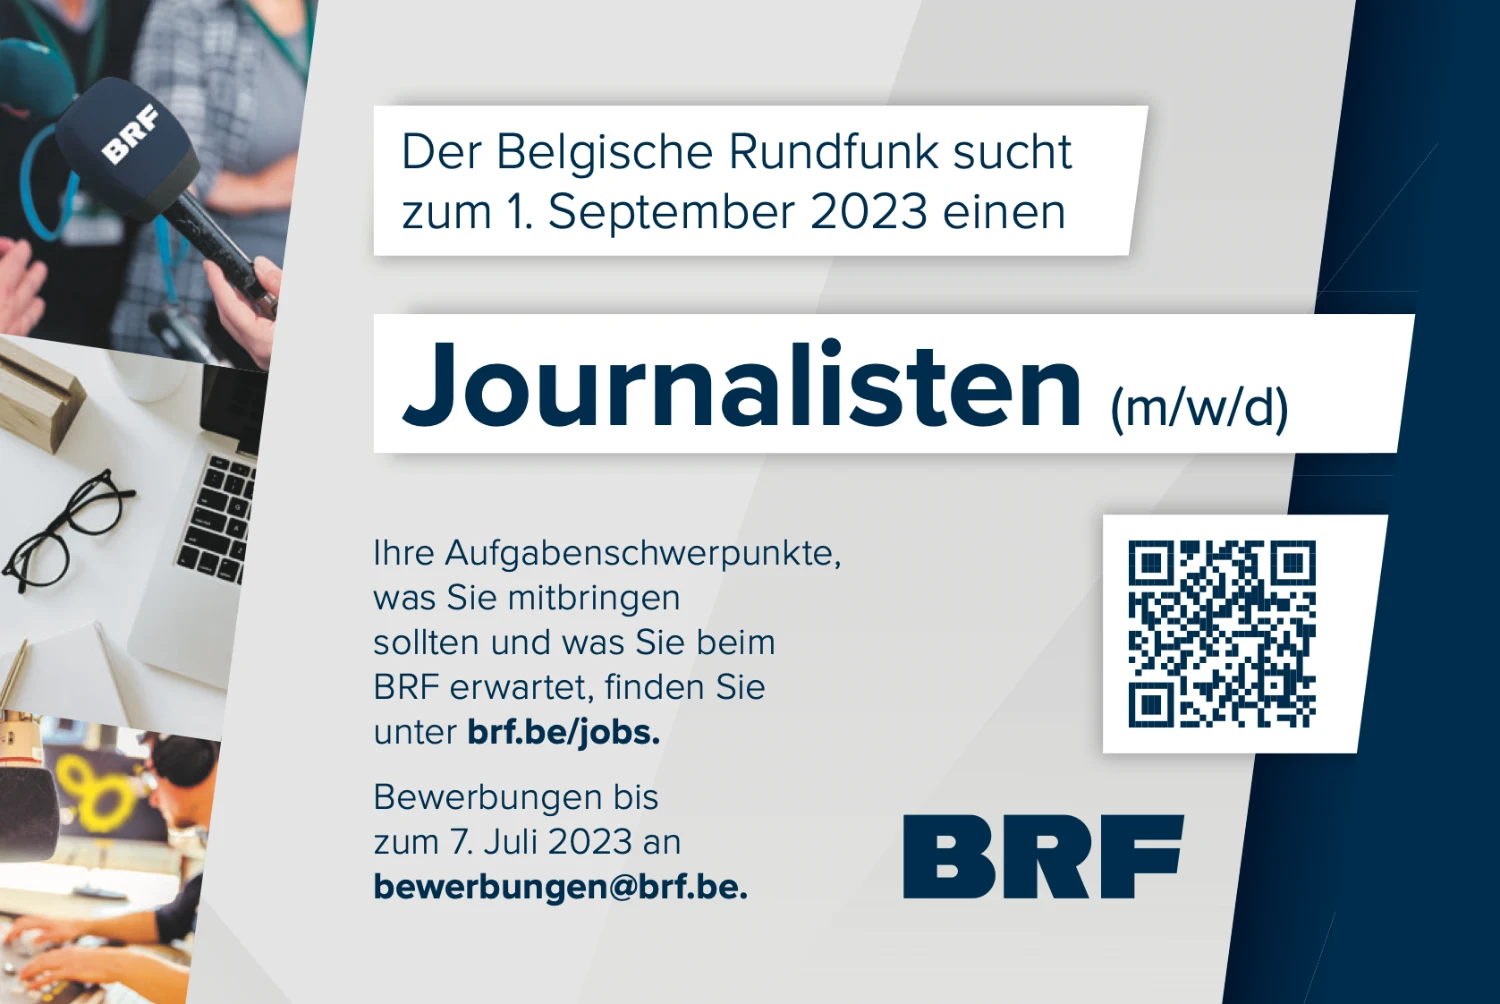 BRF sucht Journalisten (m/w/d)